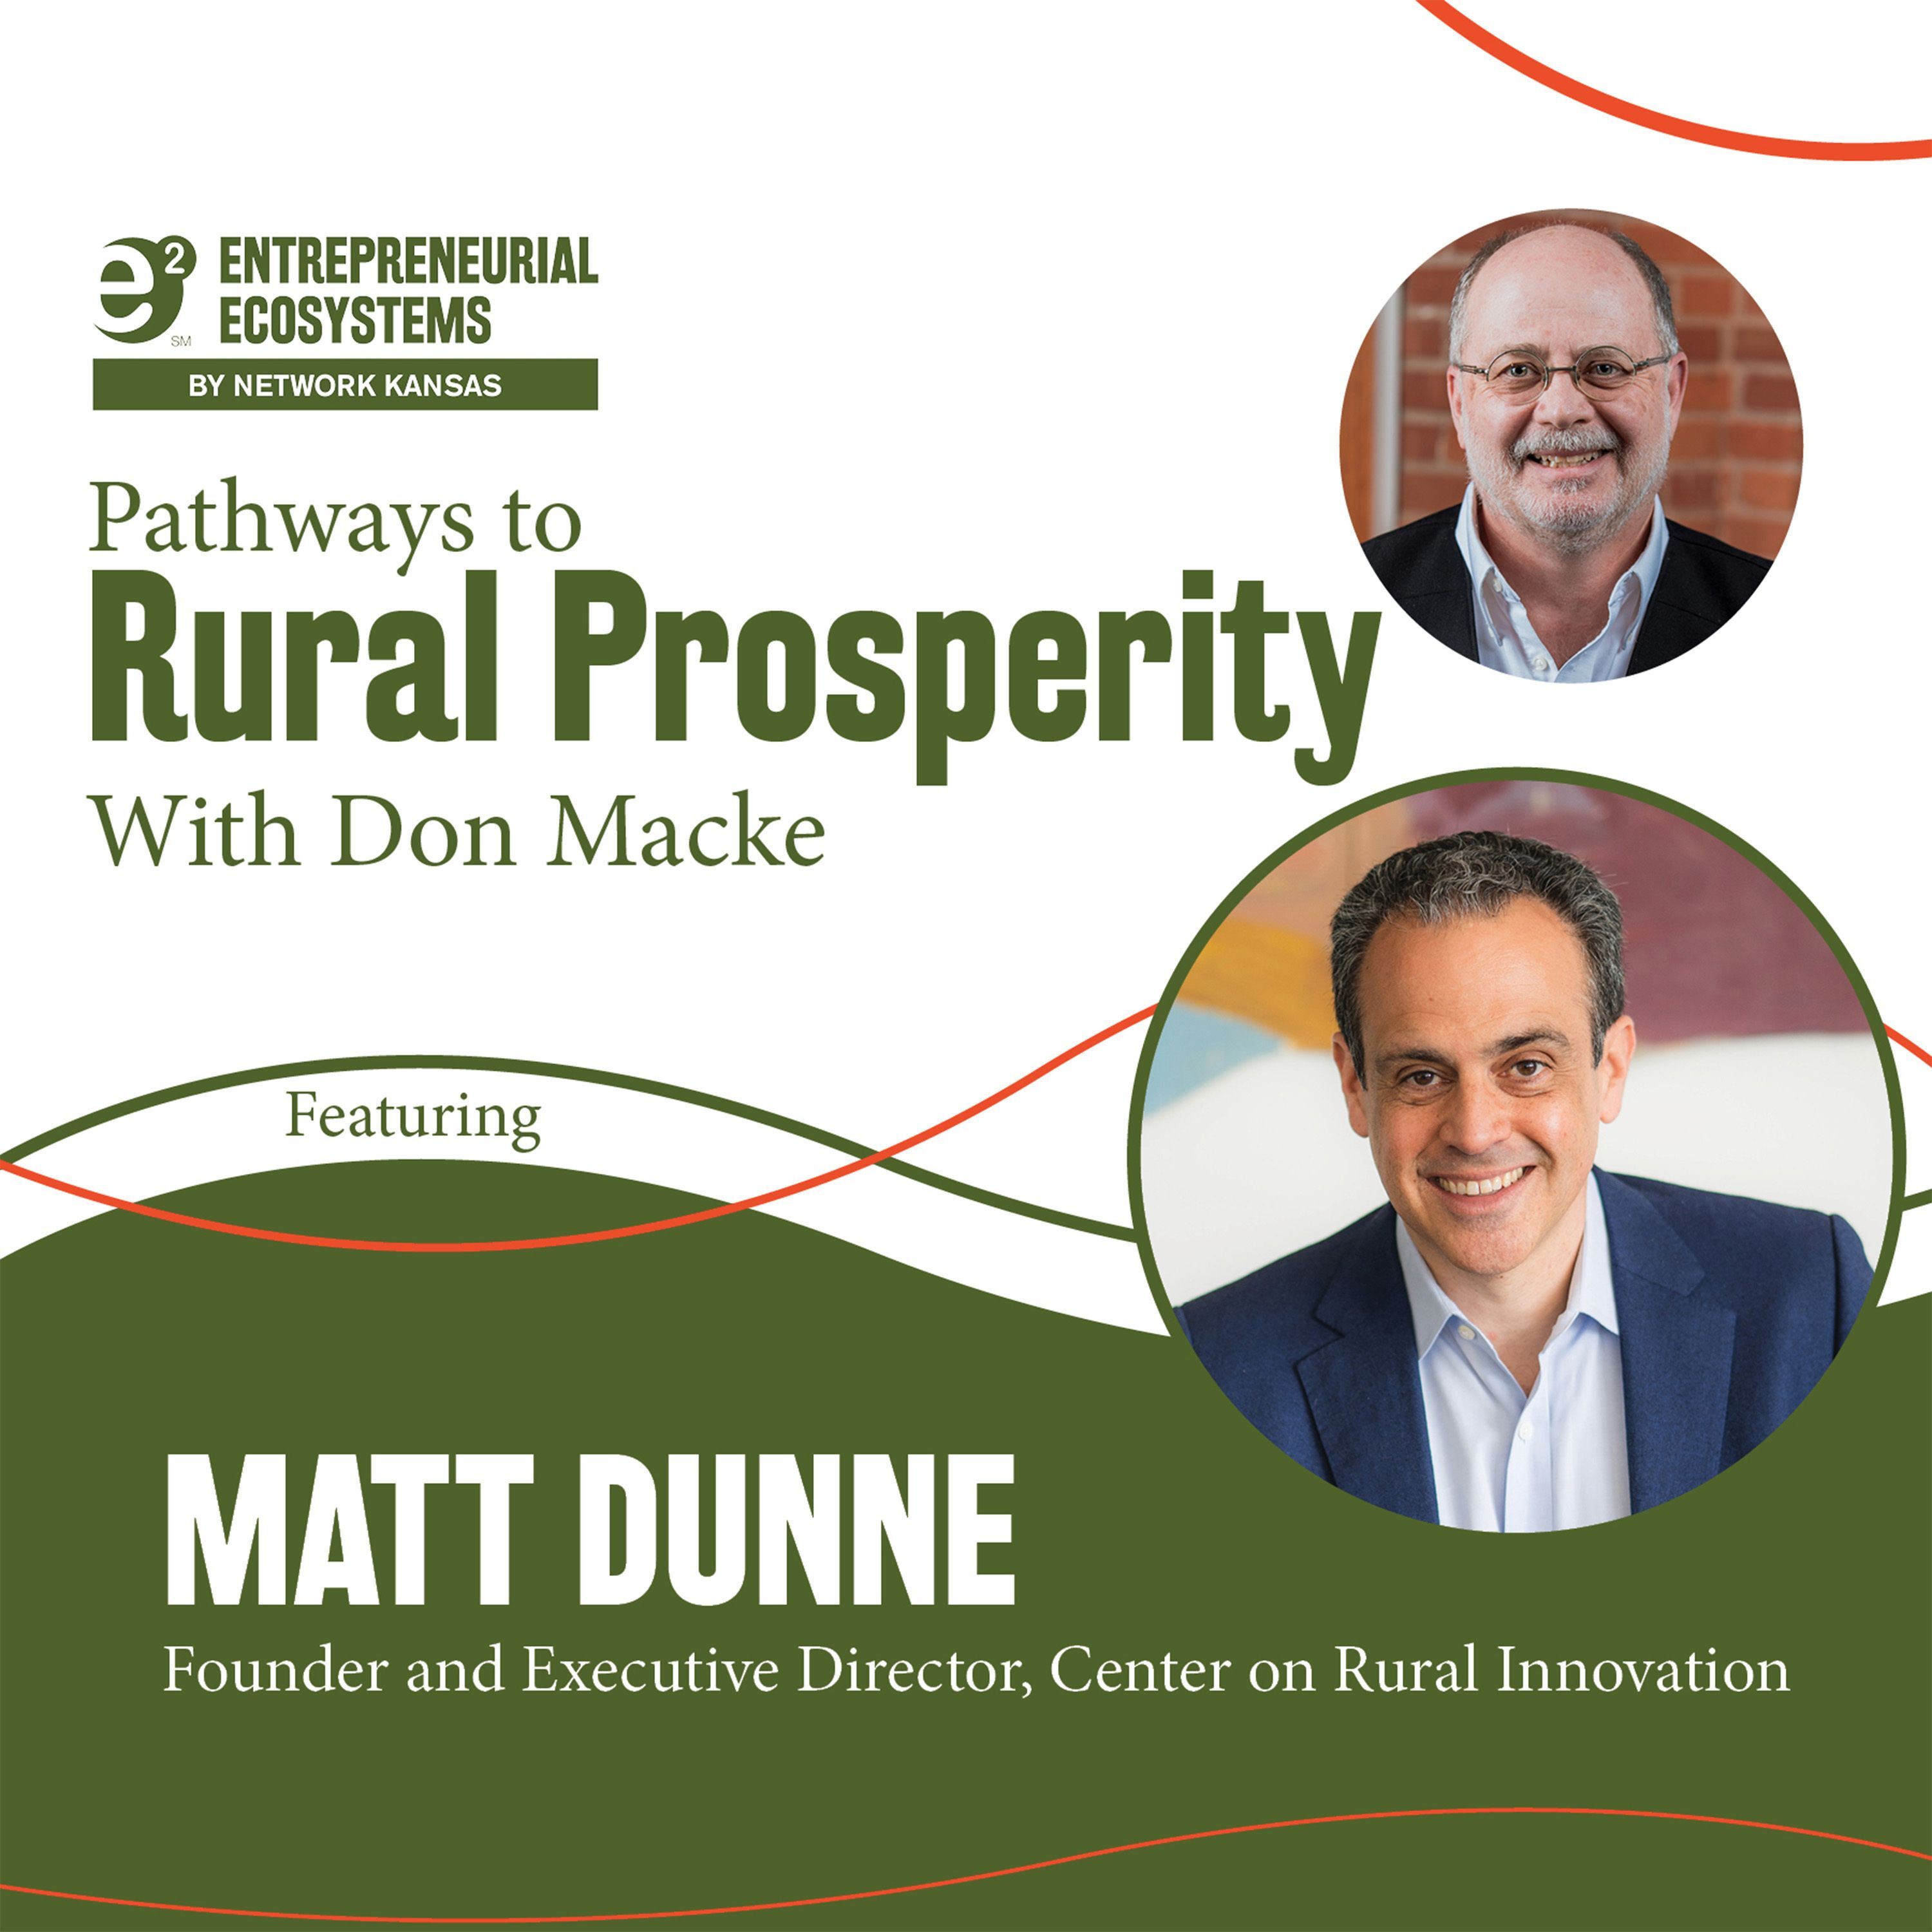 Matt Dunne – Center on Rural Innovation